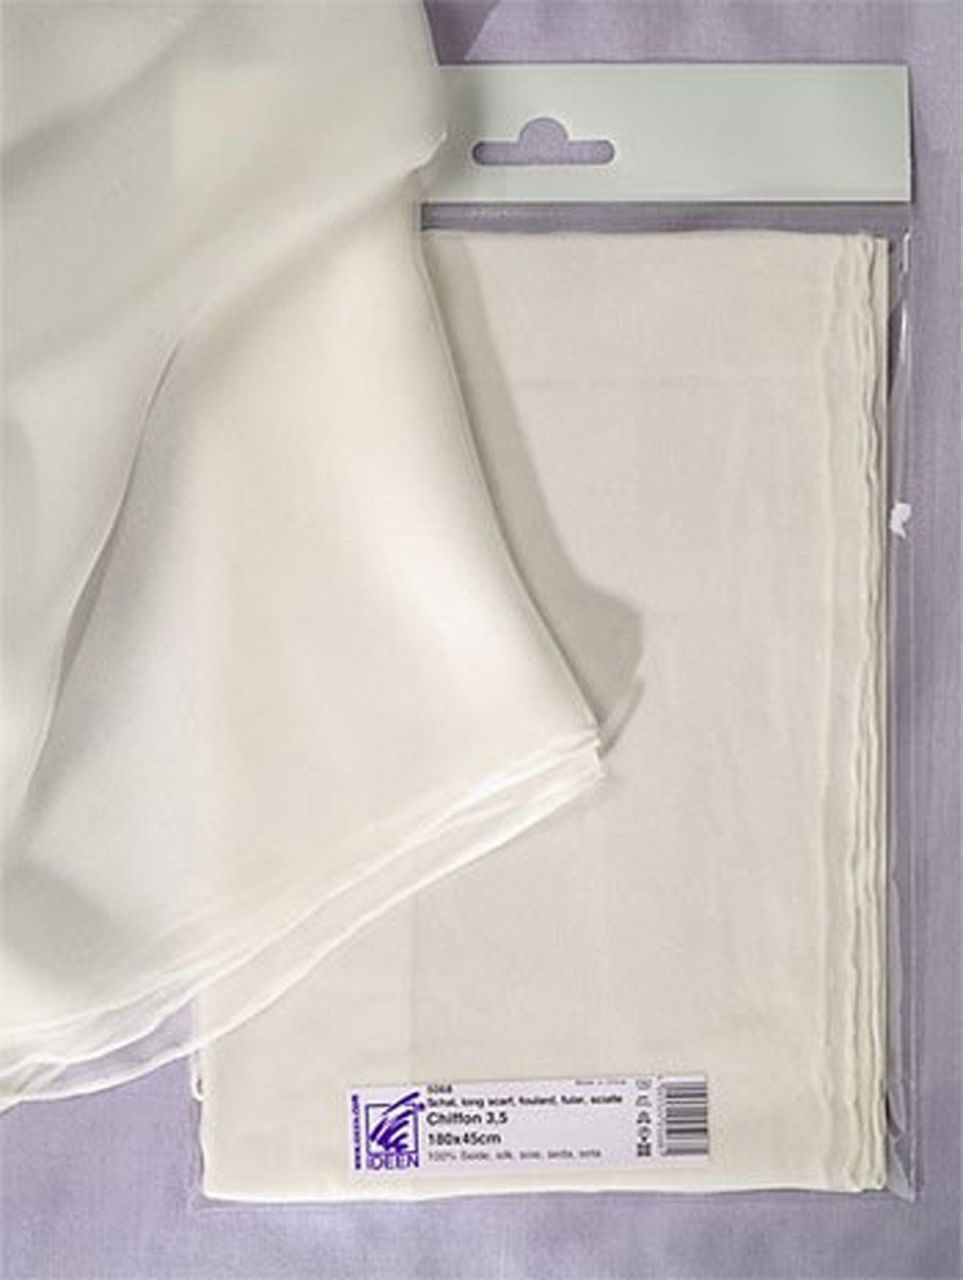 Selyem Chiffon 3.5 szegett sál, fehér, 180x45 cm széles